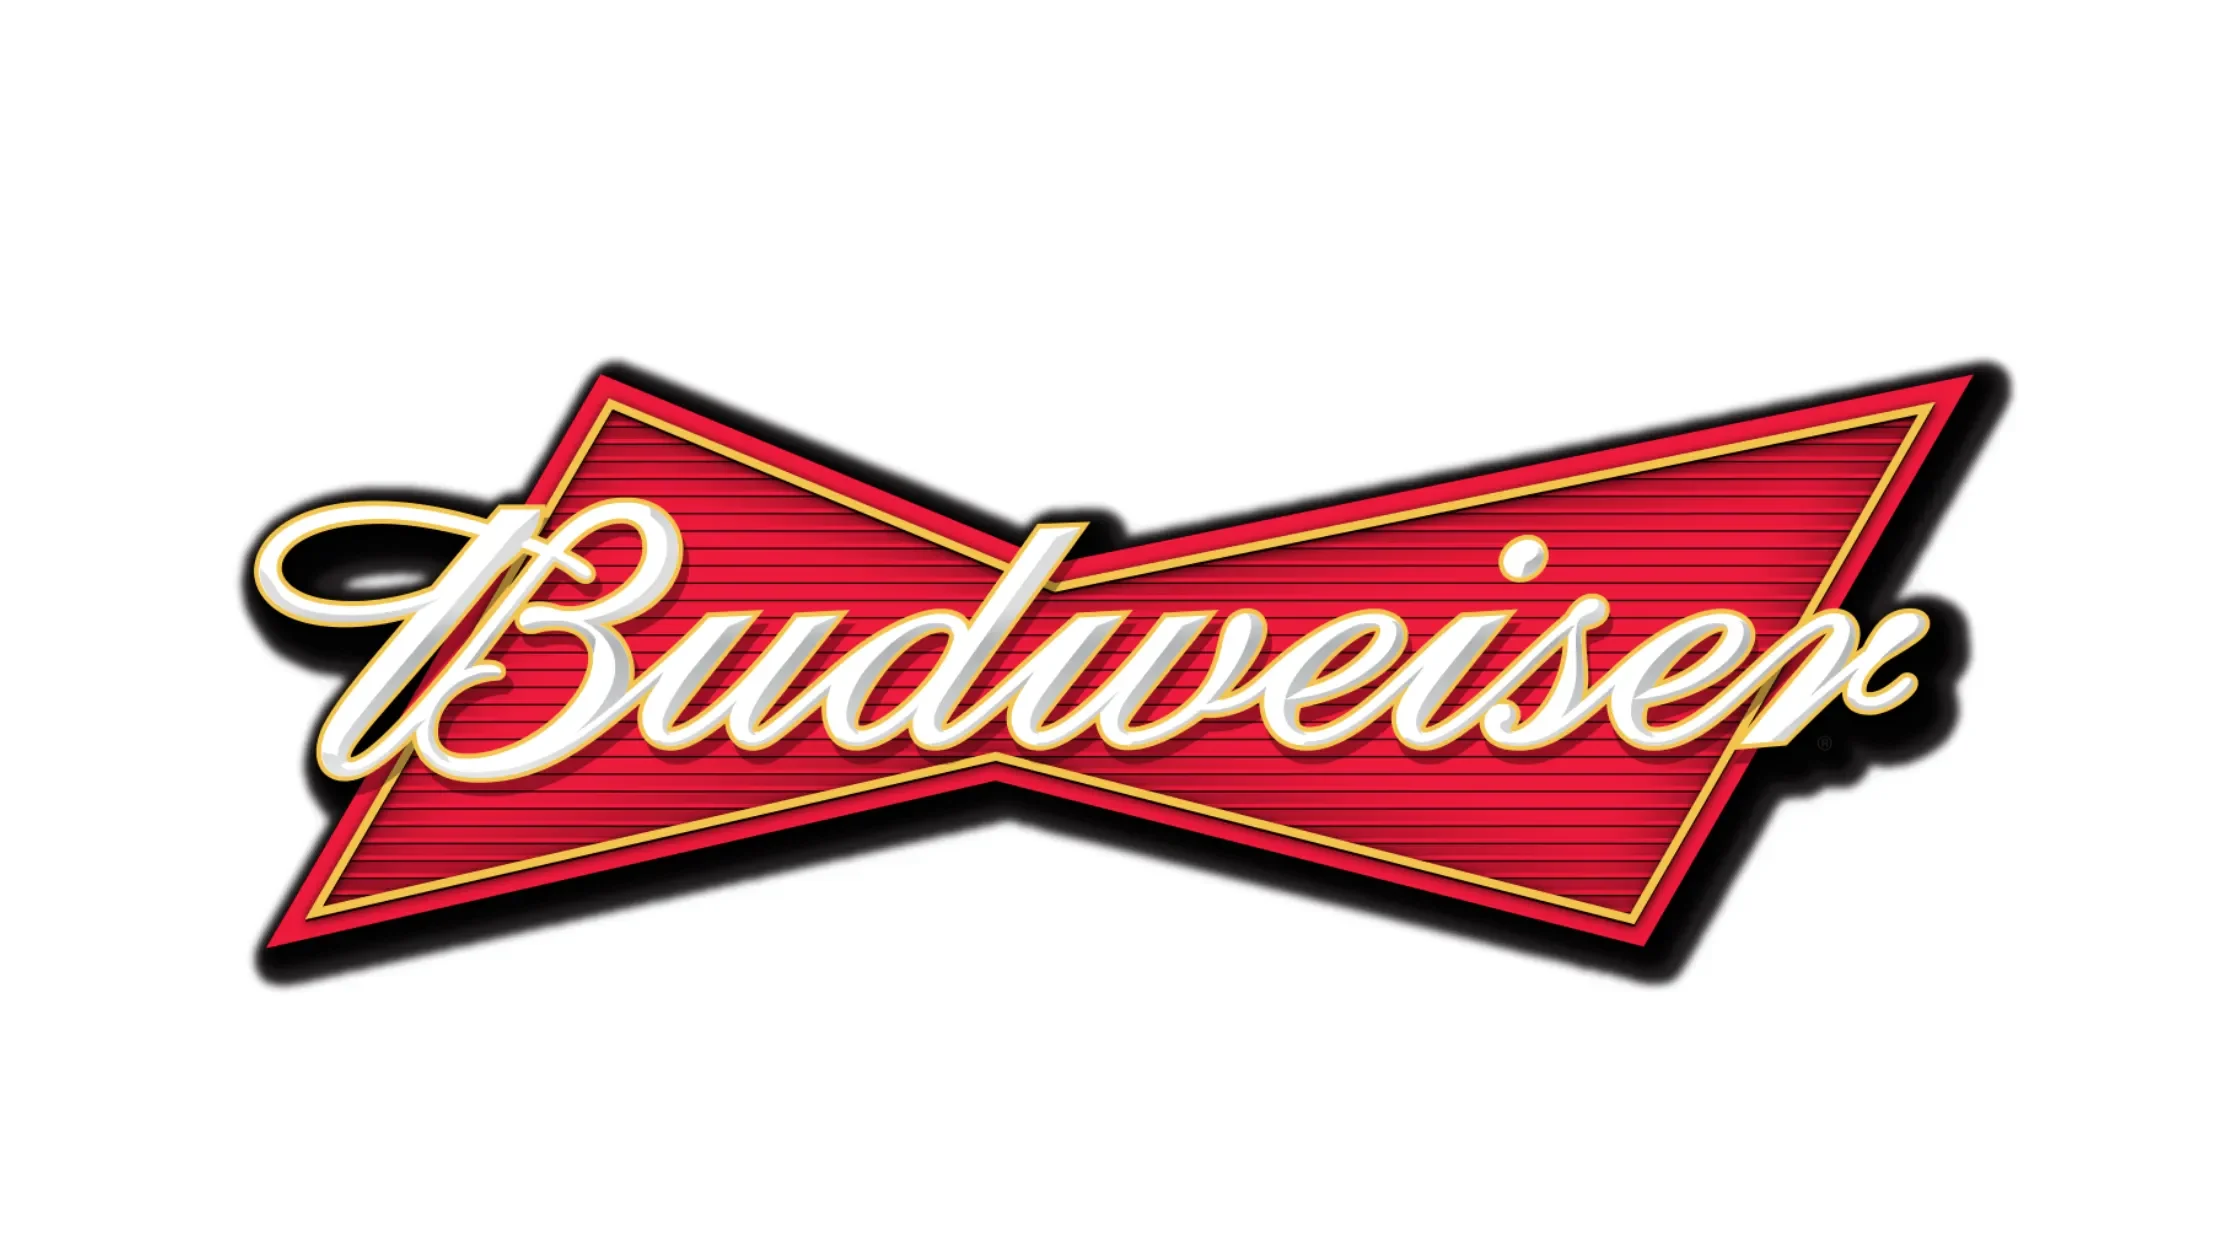 Budweiser Font